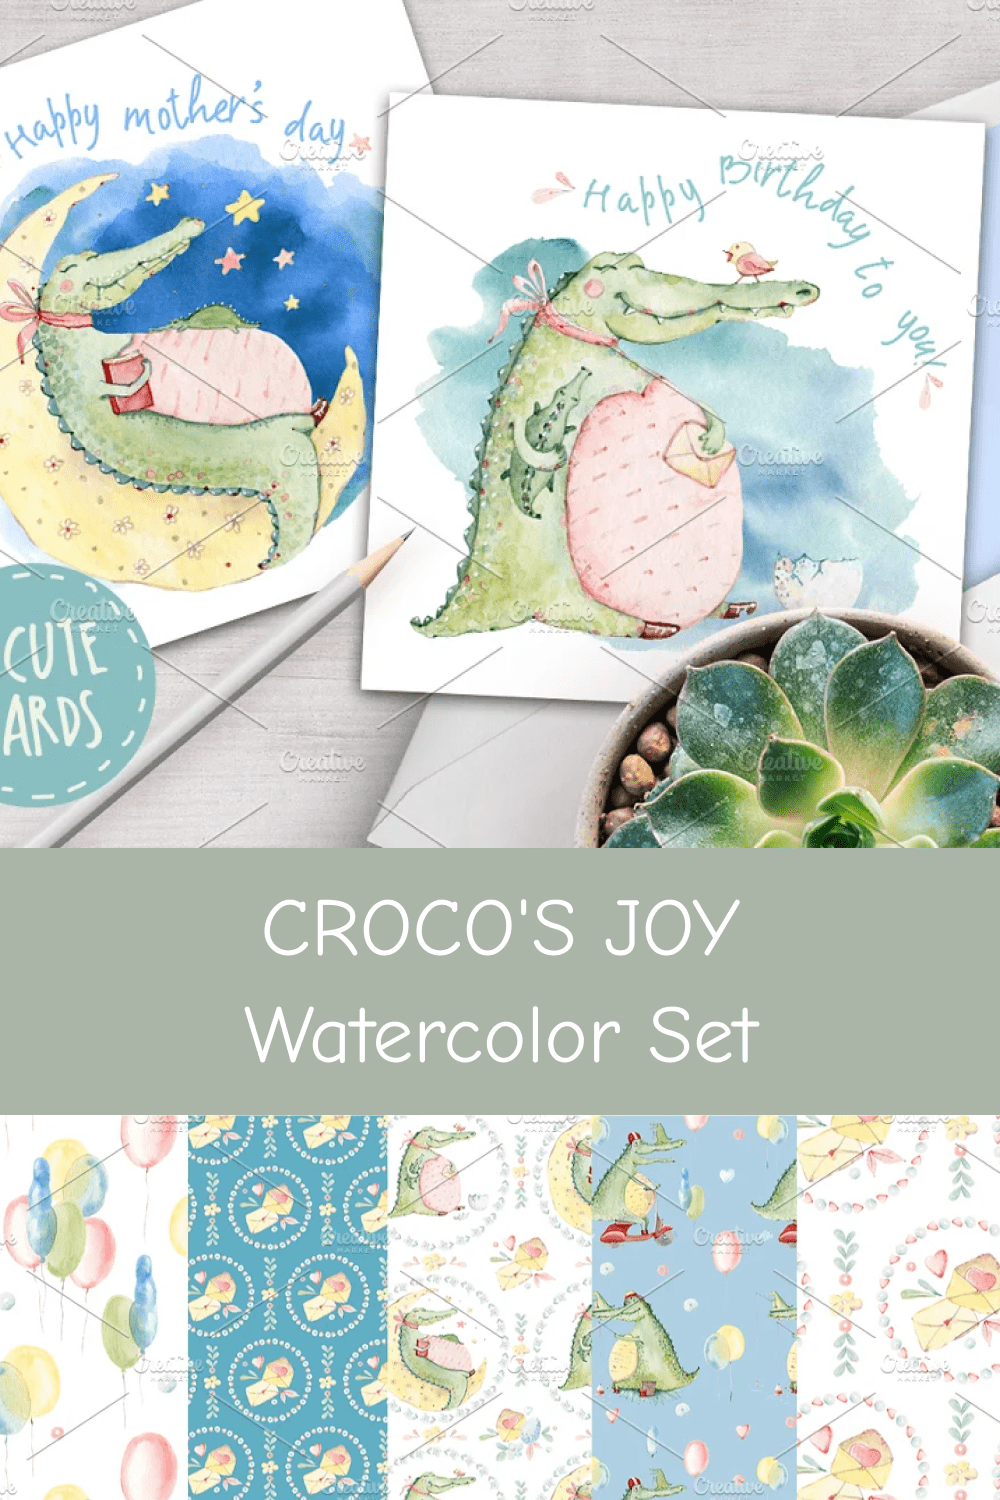 CROCO'S Joy Watercolor Set.